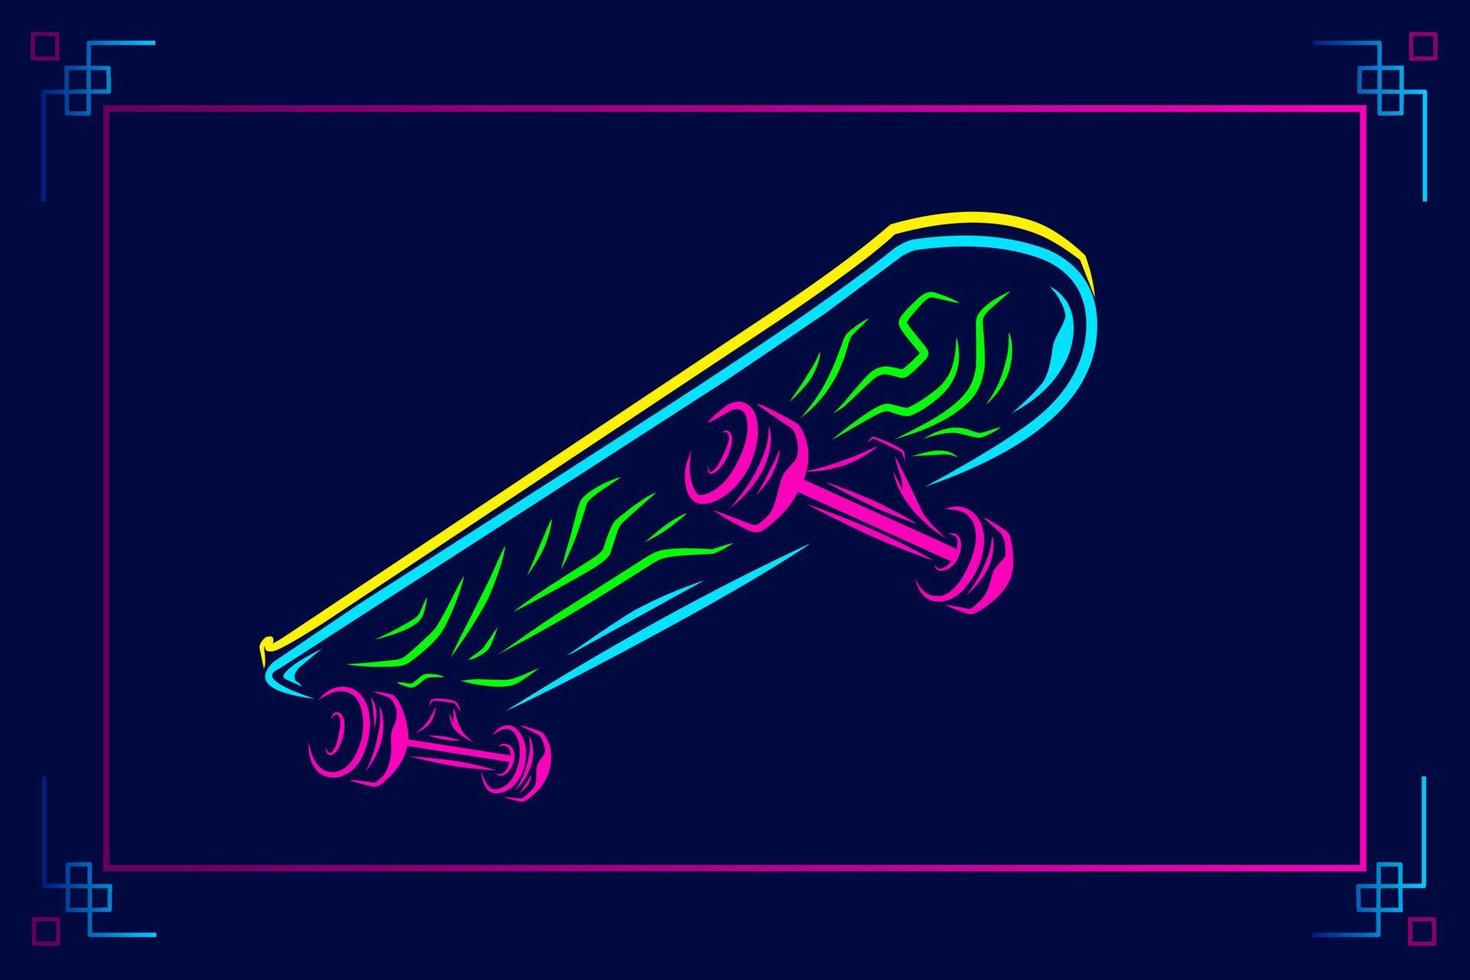 Skateboard Vektor Silhouette Linie Pop Art Potrait Logo farbenfrohes Design mit dunklem Hintergrund. abstrakte Vektorillustration. isolierter schwarzer hintergrund für t-shirt, poster, kleidung.